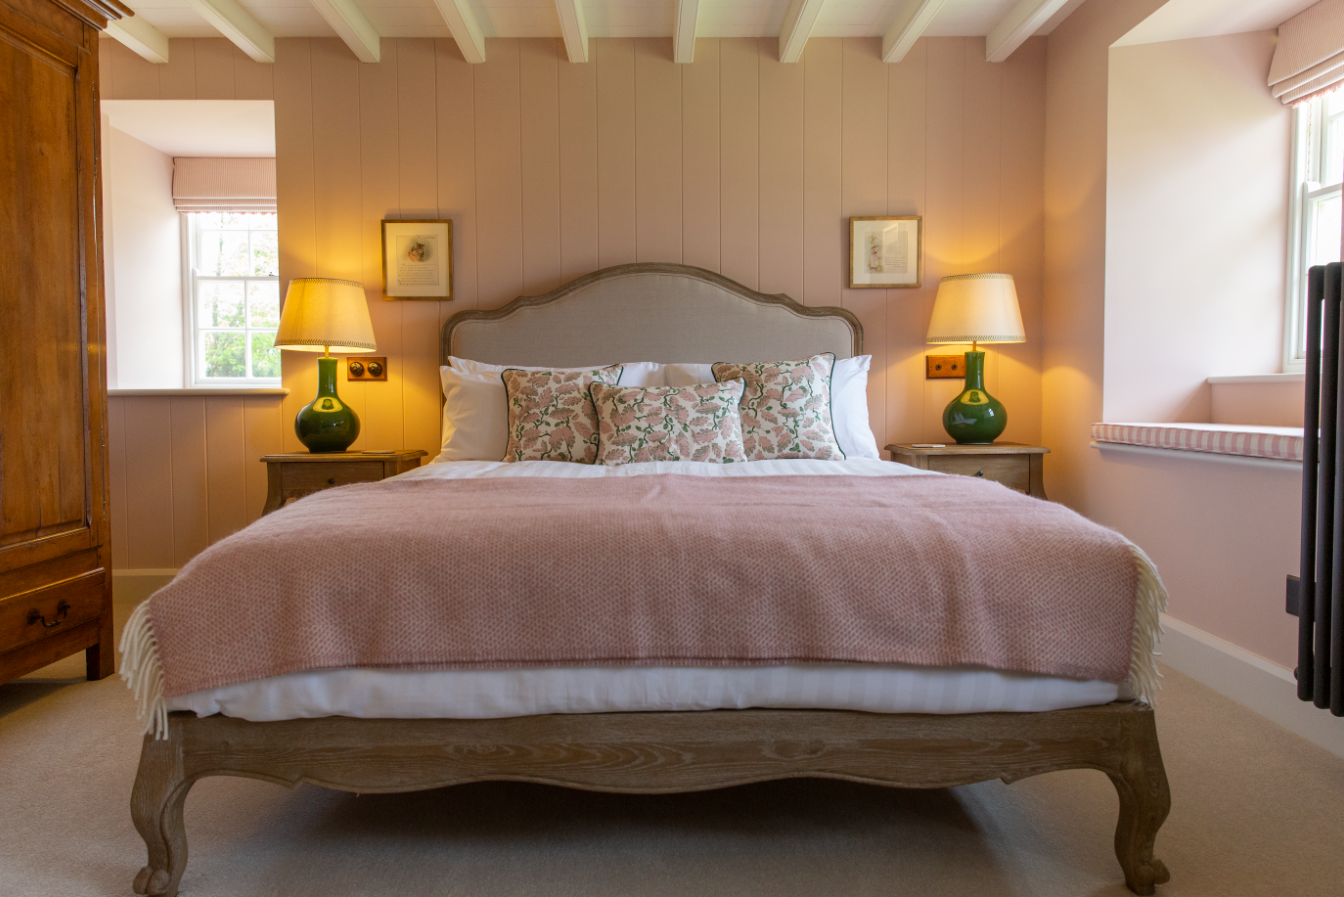 Bedroom 2 (pink) - double bedroom - first floor